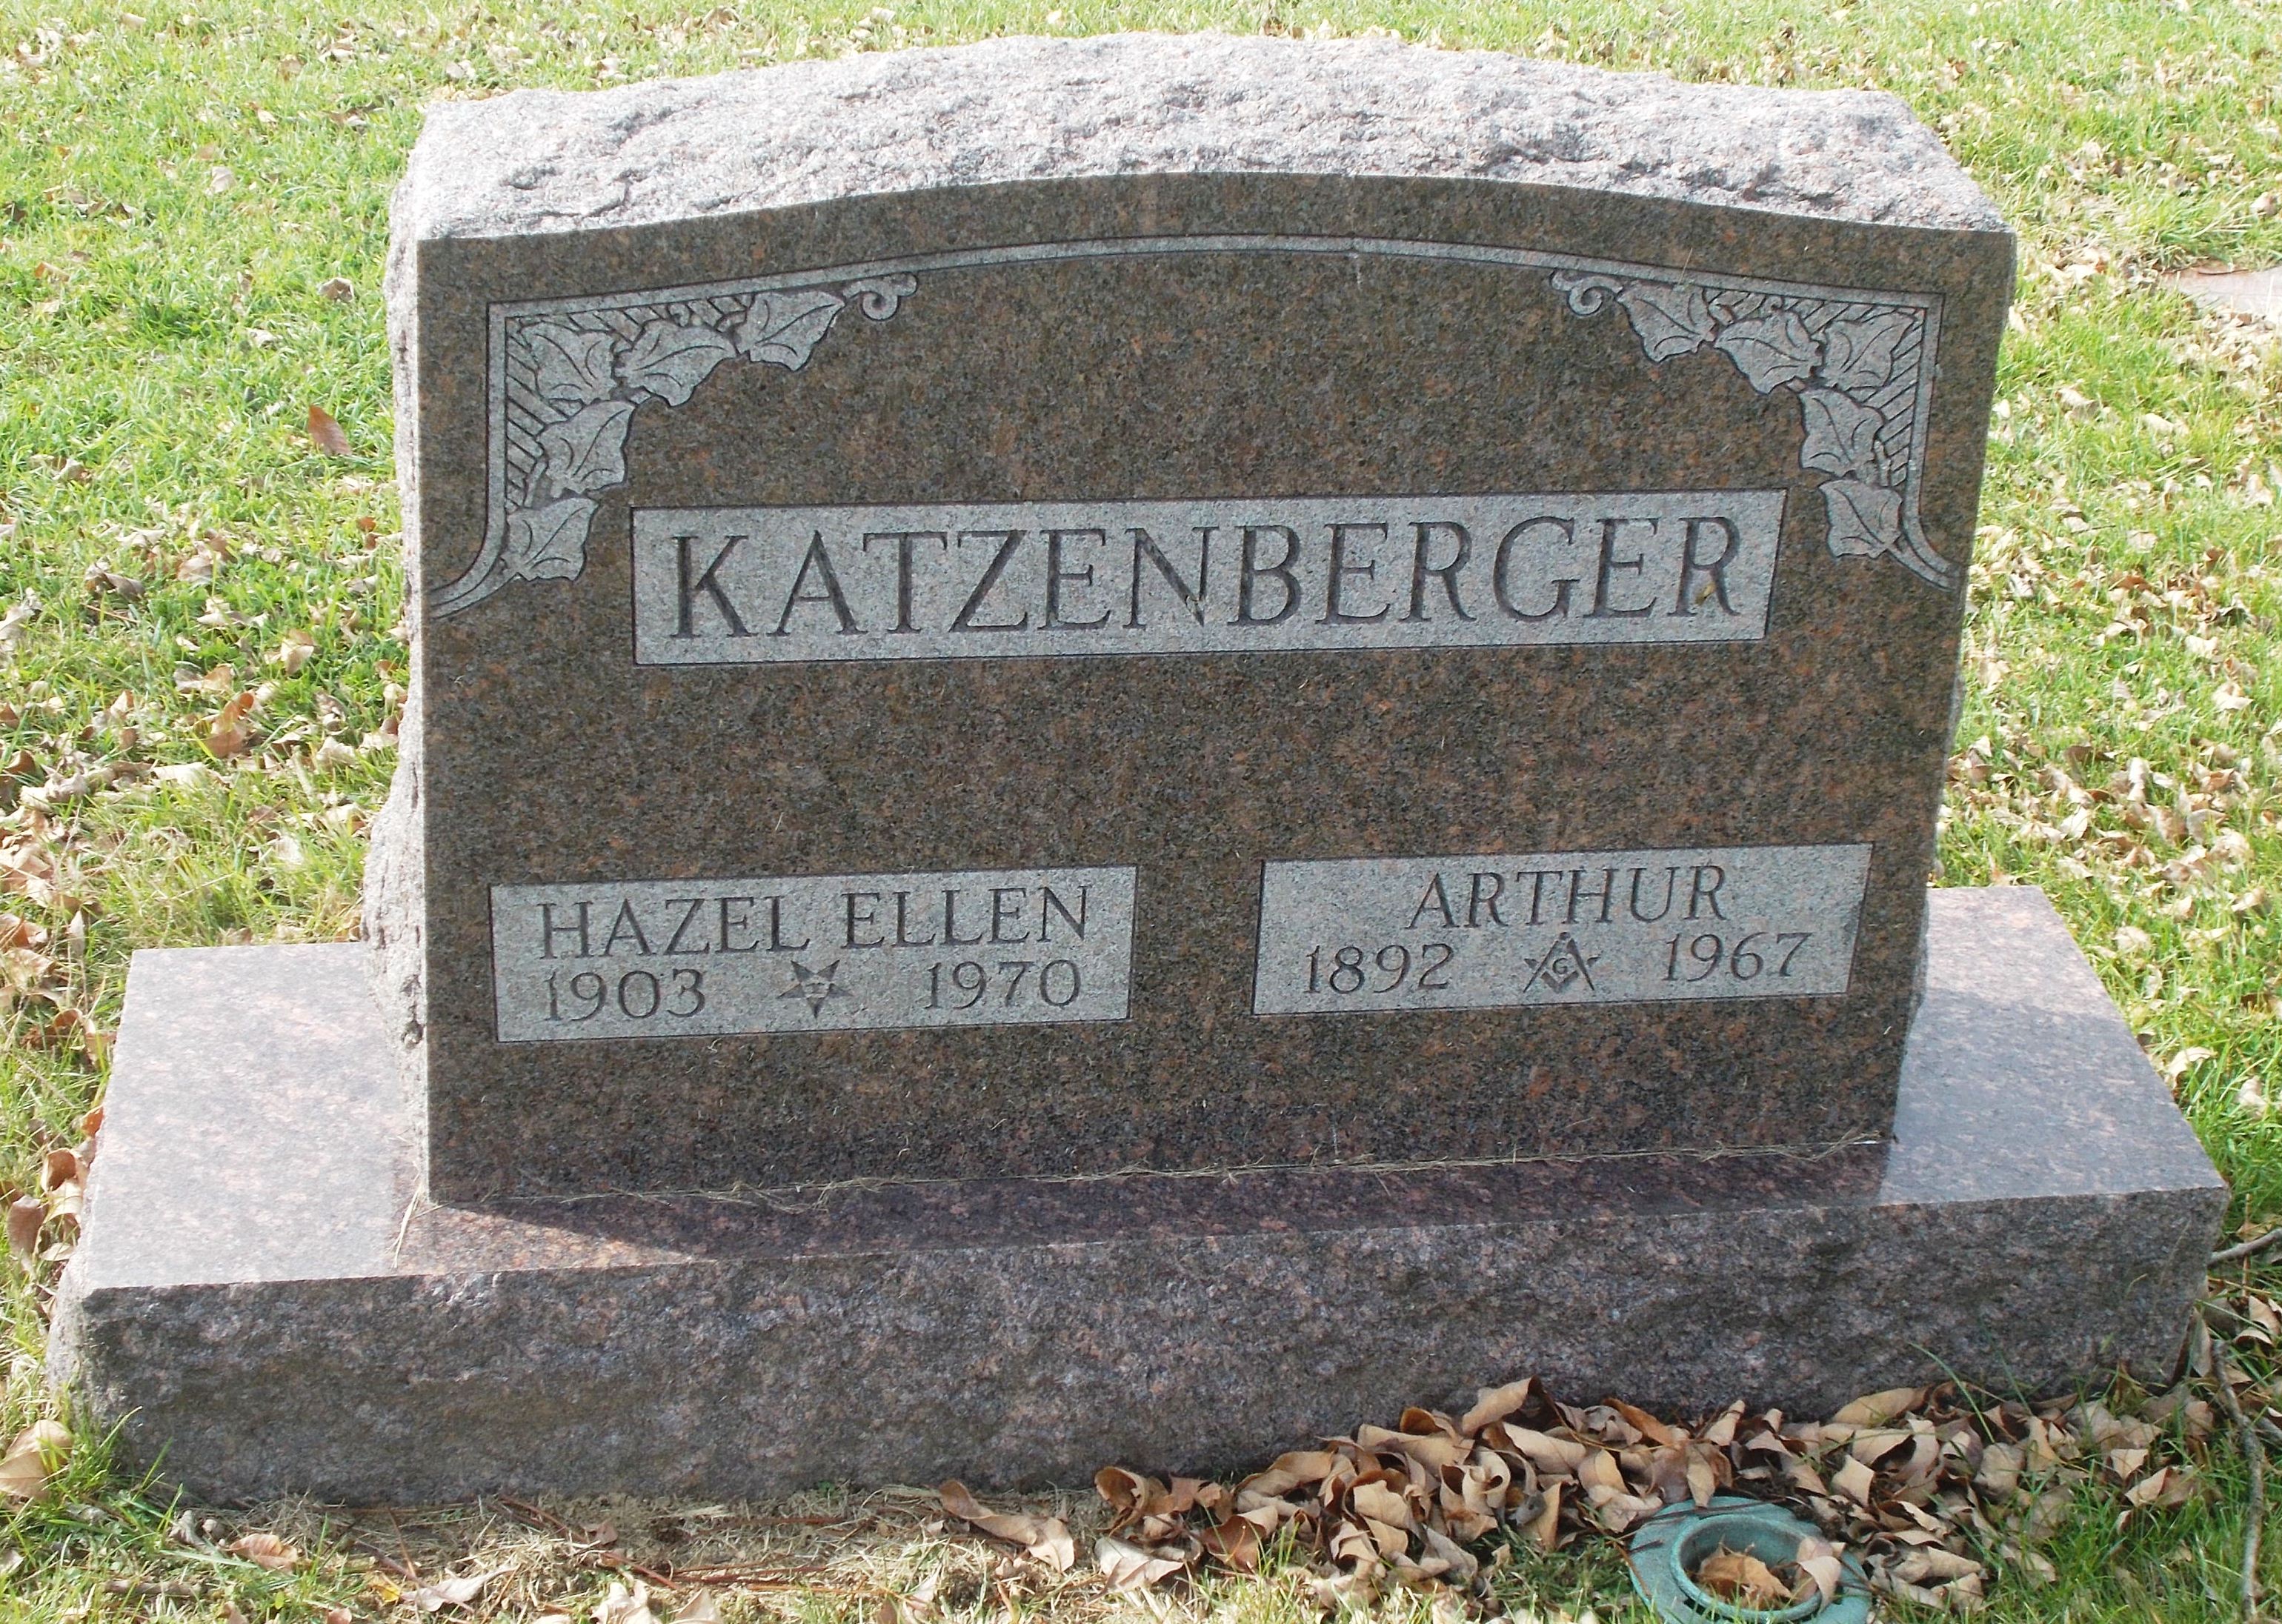 Hazel Ellen Katzenberger